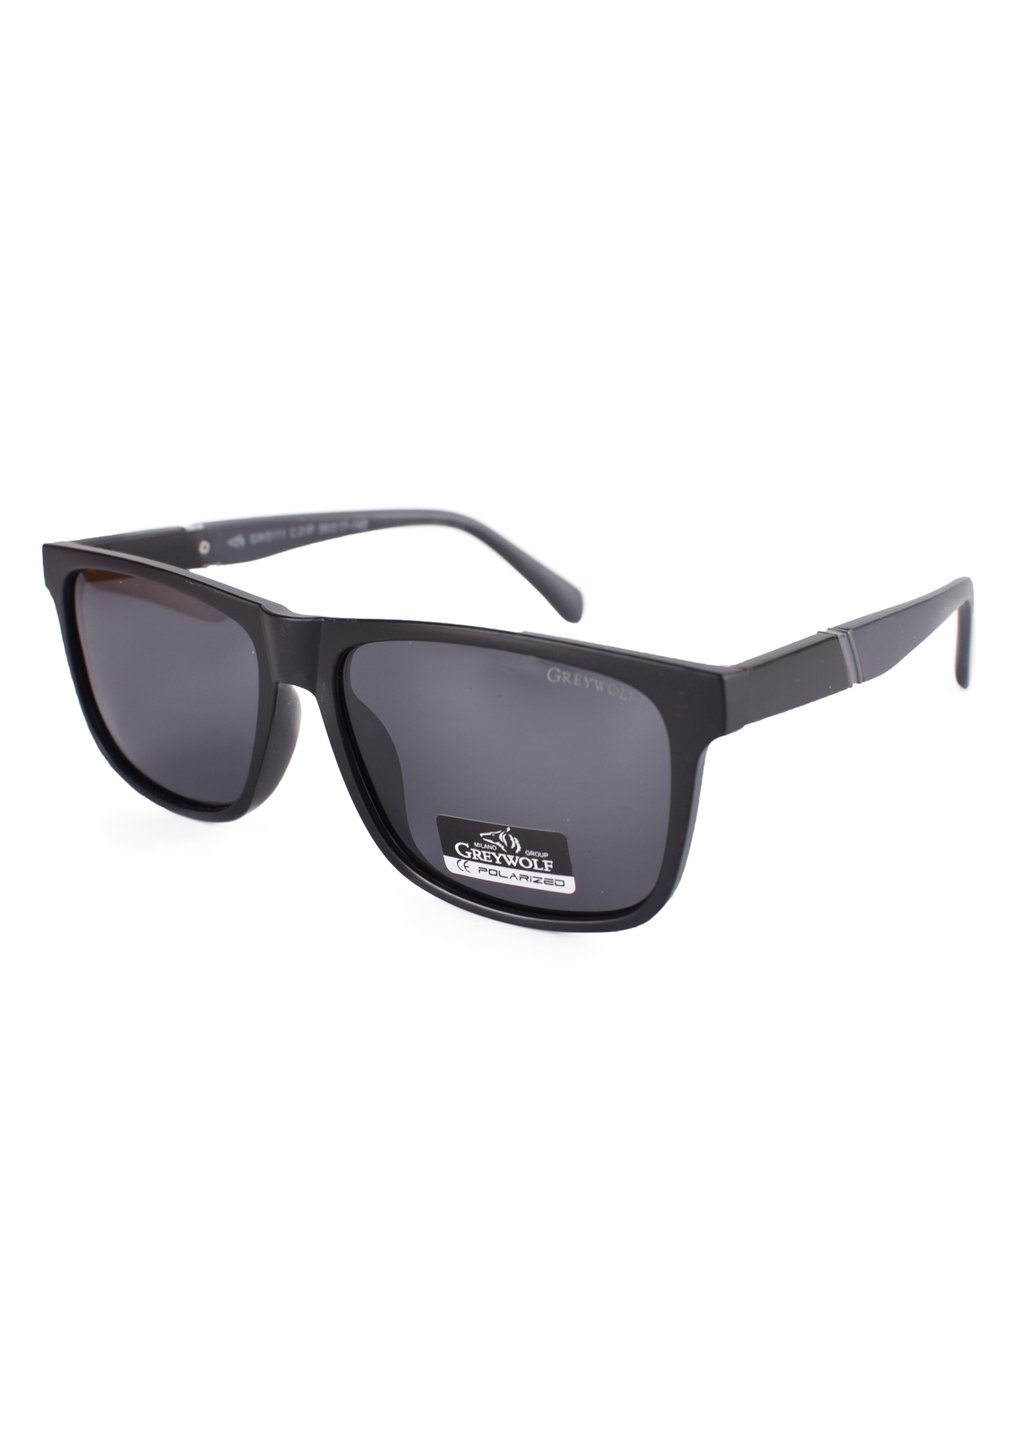 Купить Черные мужские солнцезащитные очки Gray Wolf с поряризацией GW5111 121009 в интернет-магазине